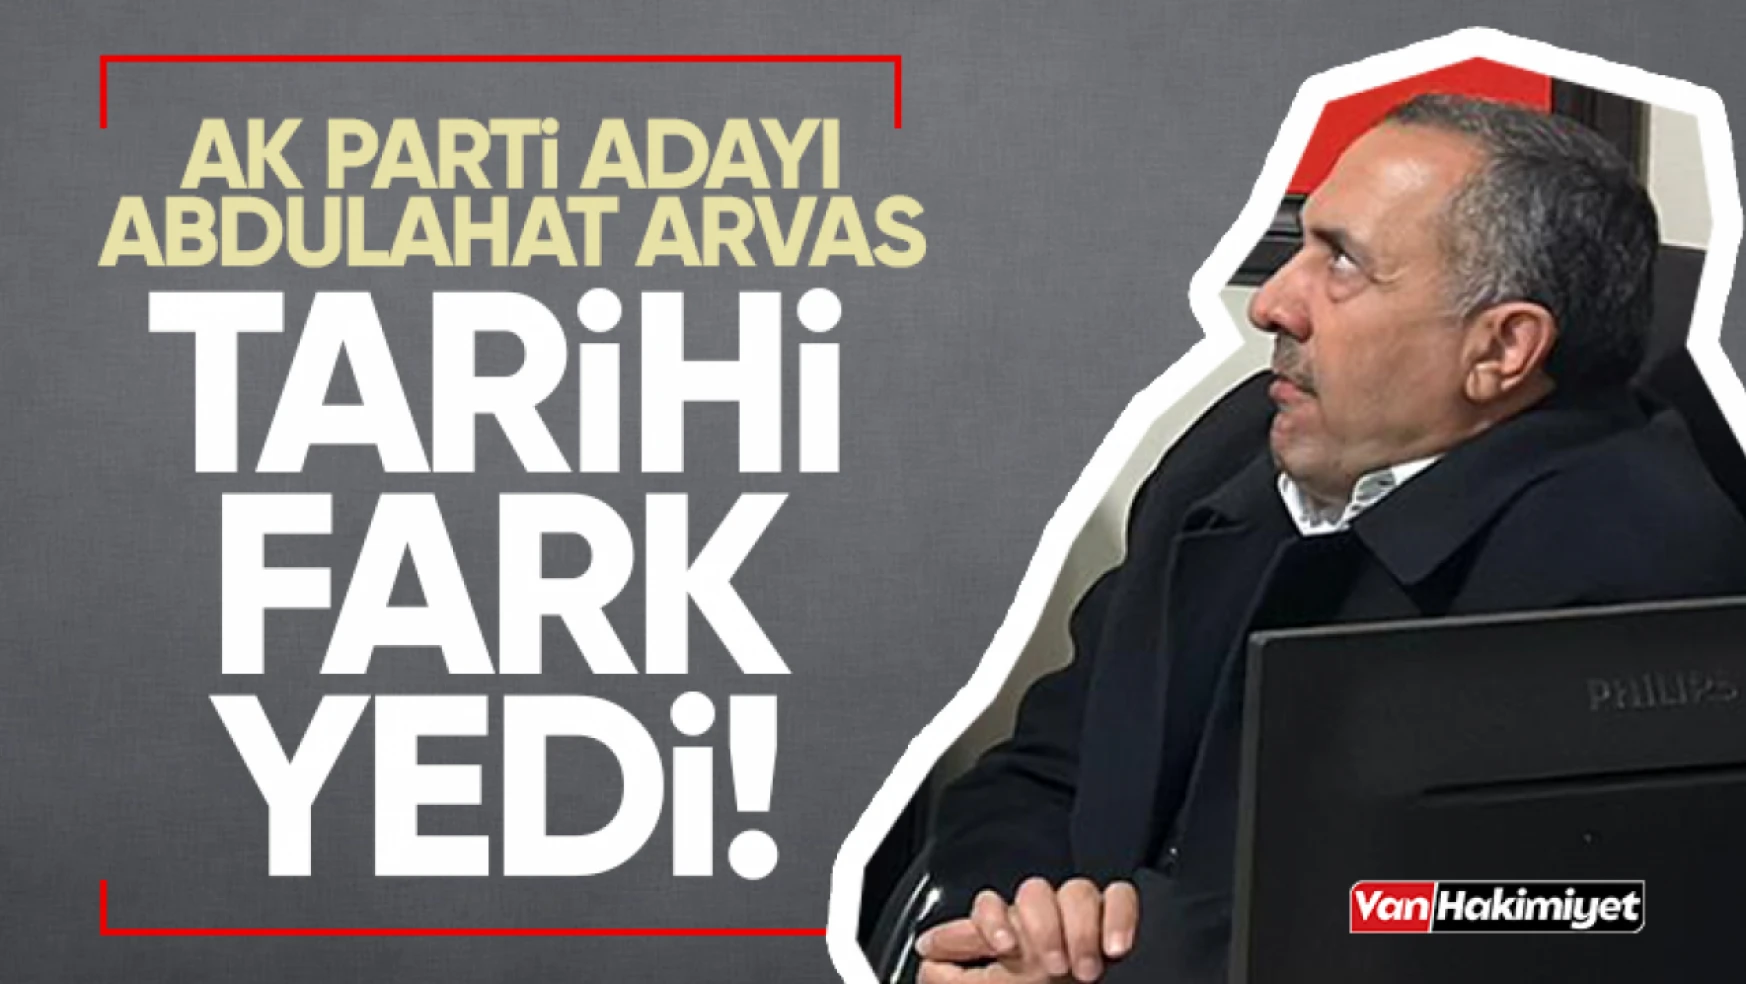 AK Parti adayı Abdulahat Arvas tarihi fark yedi!